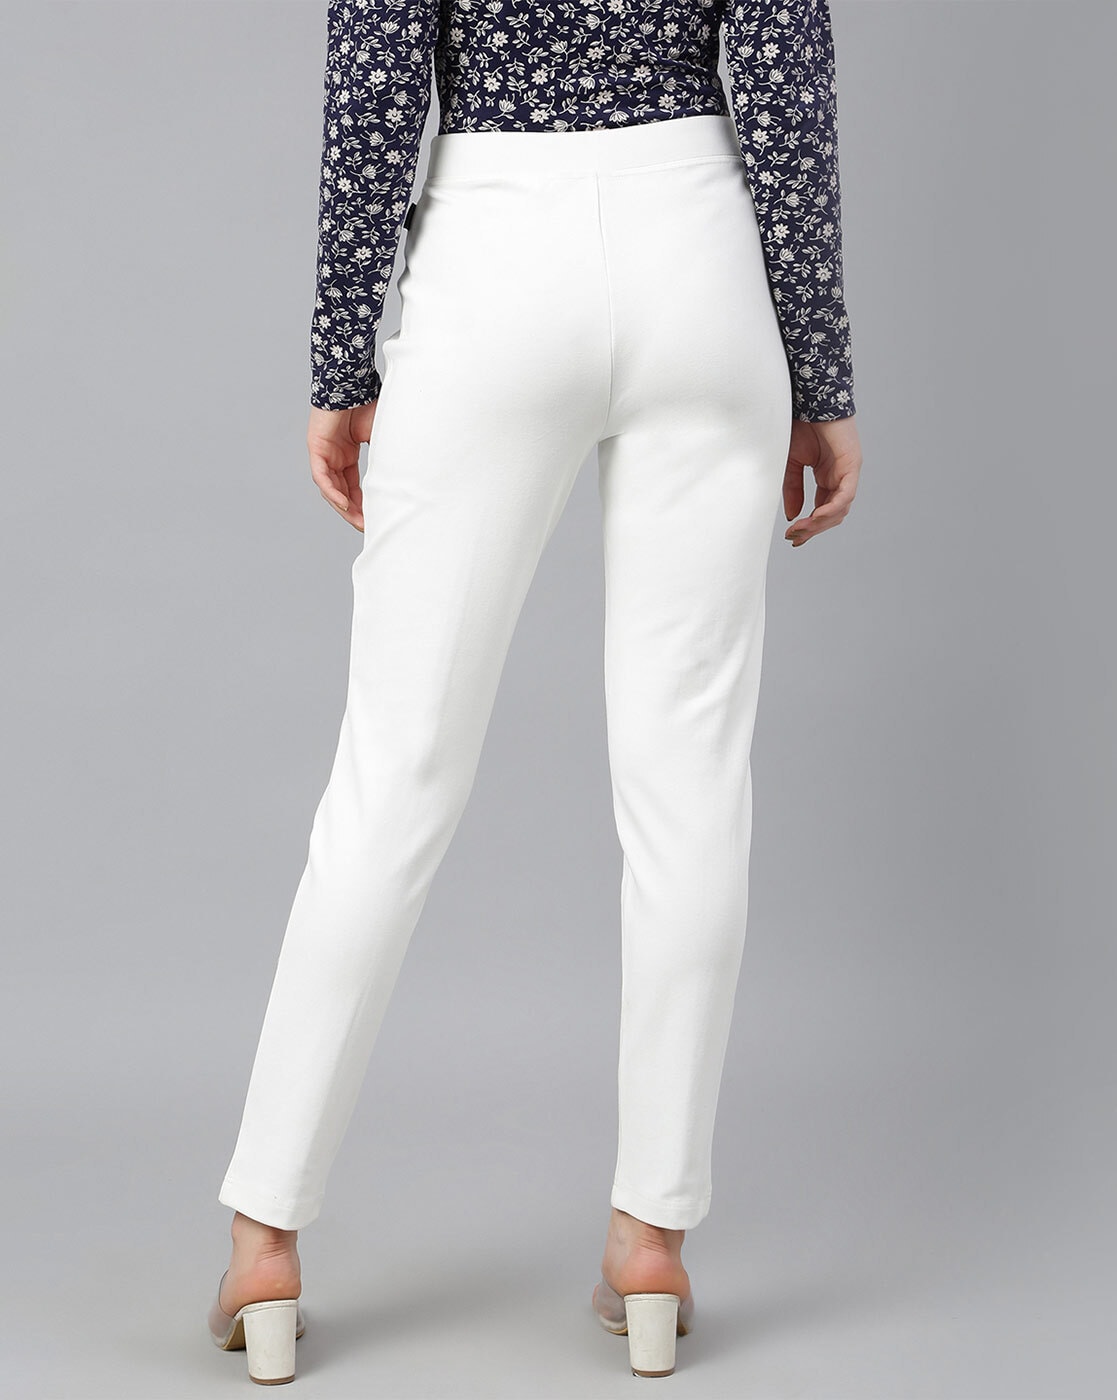 Keeny Slim Fit Women White Trousers  Buy Keeny Slim Fit Women White  Trousers Online at Best Prices in India  Flipkartcom